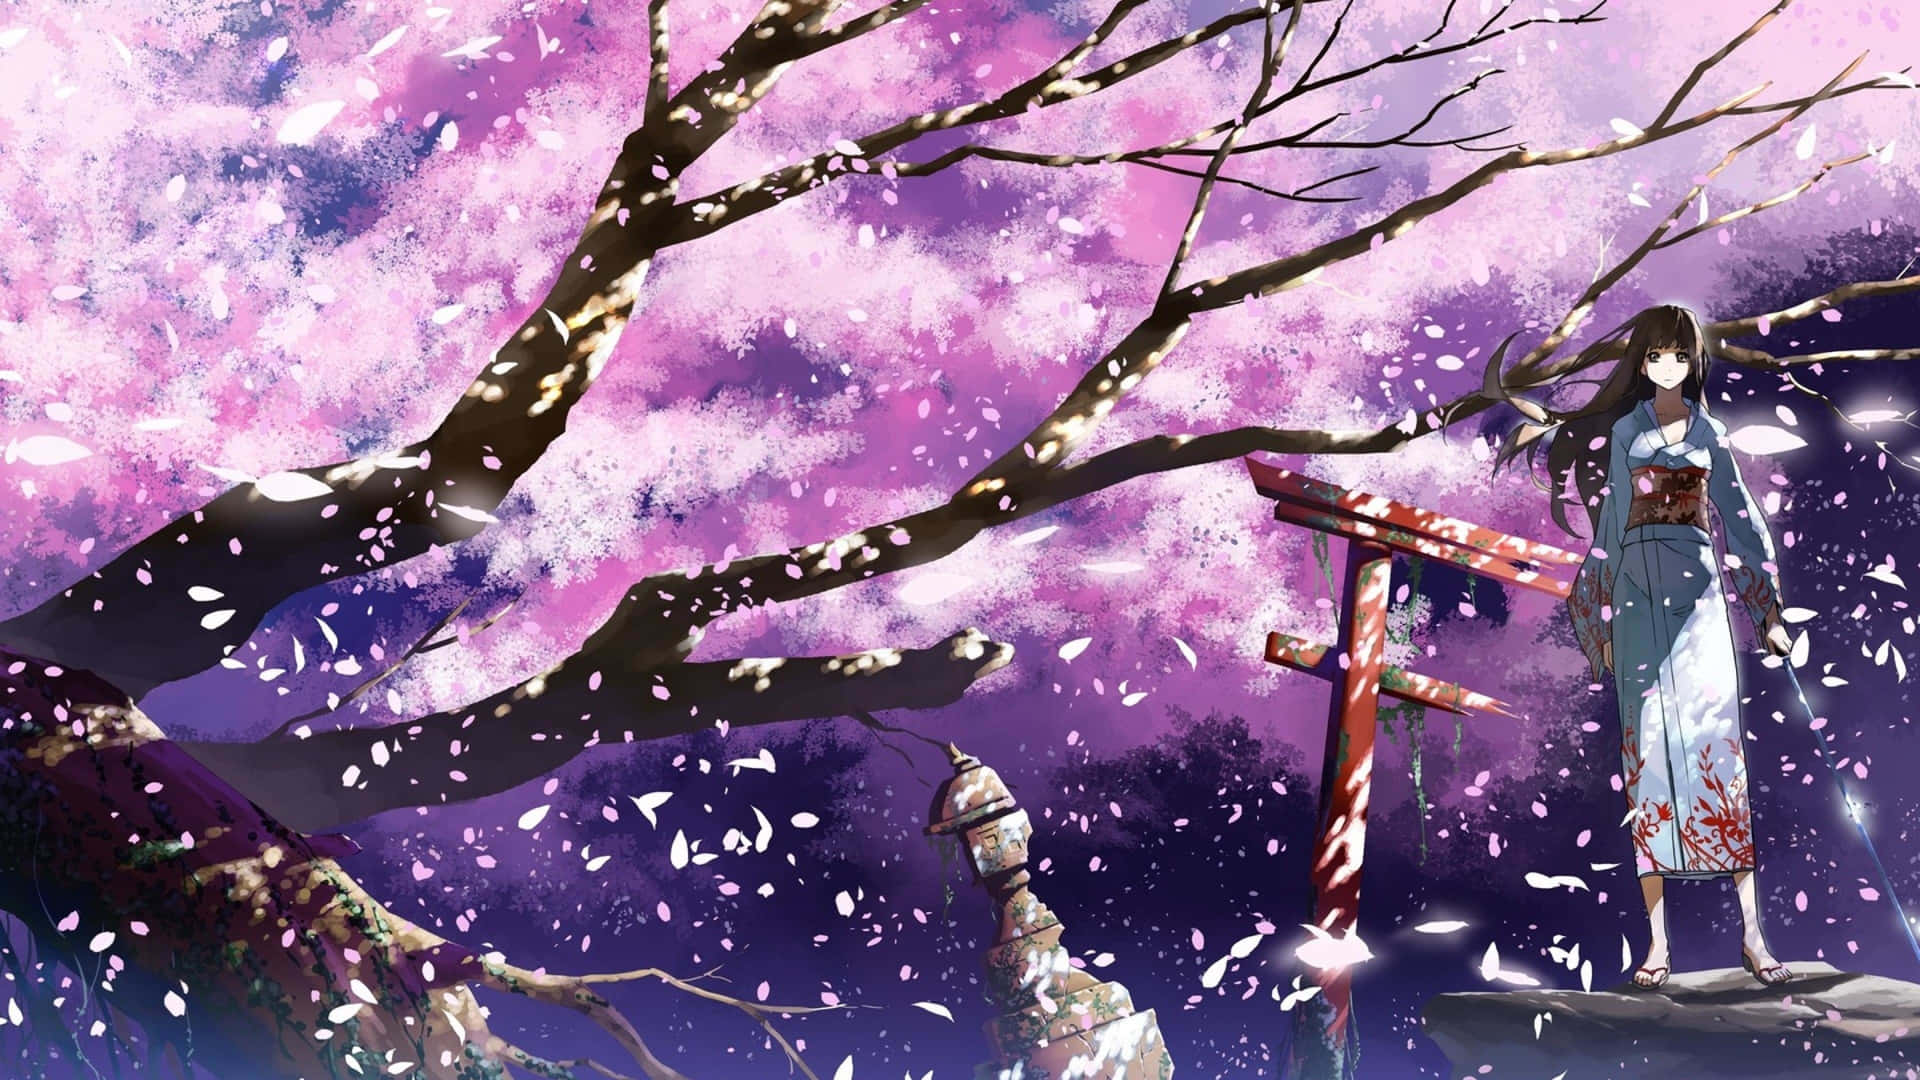 Sakura_ Blossom_ Fantasy_ Artwork Wallpaper